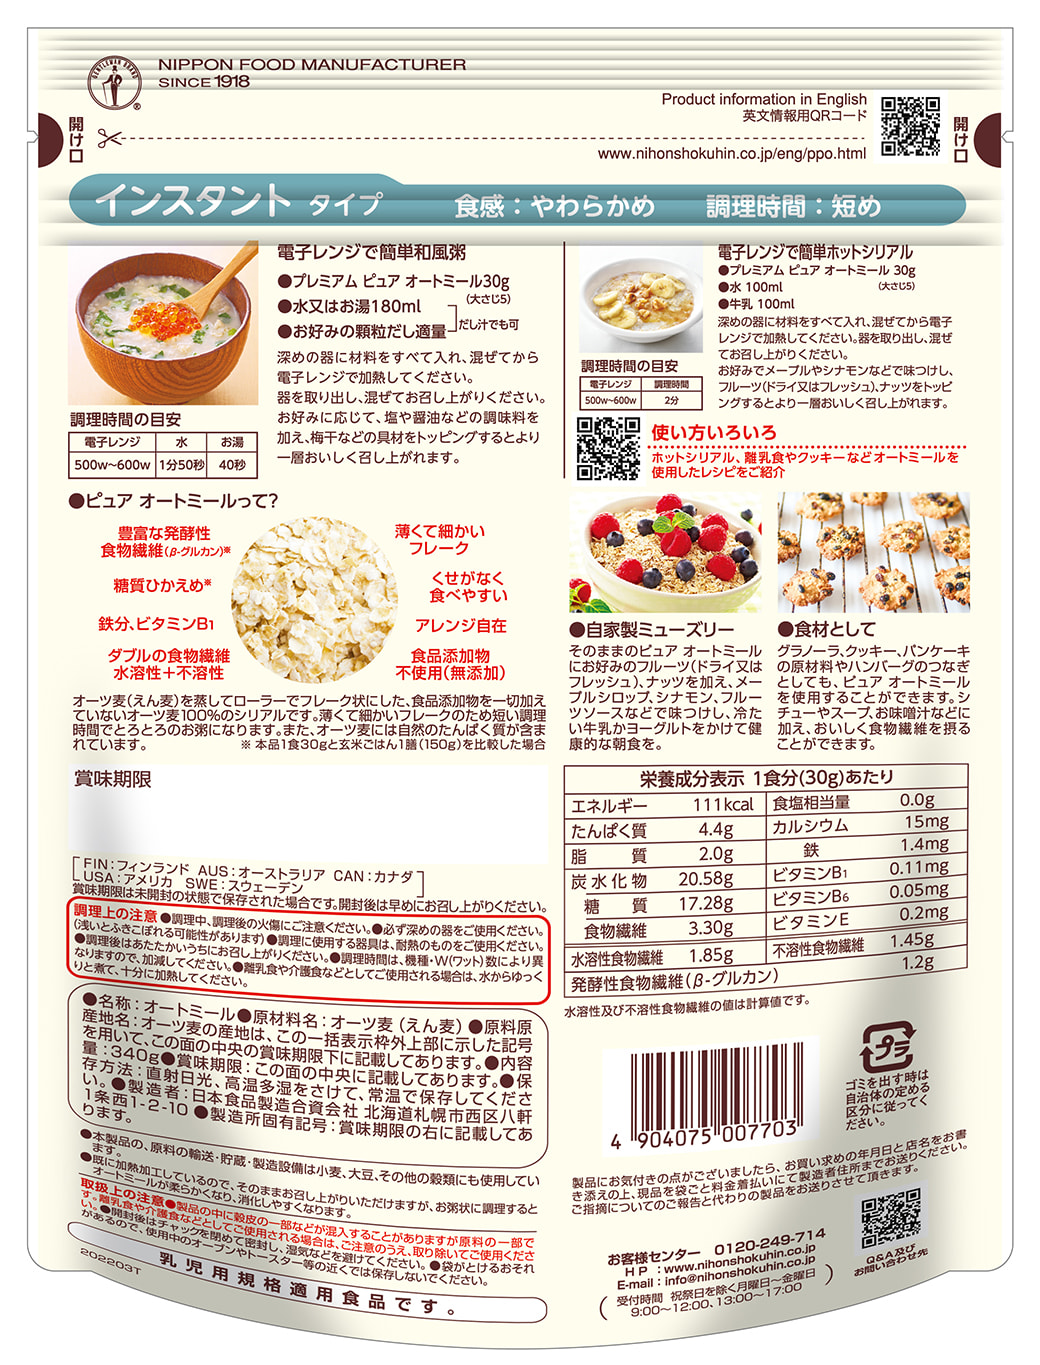 日食プレミアムピュアオートミール グラノーラ・コーンフレーク製品の日本食品製造合資会社